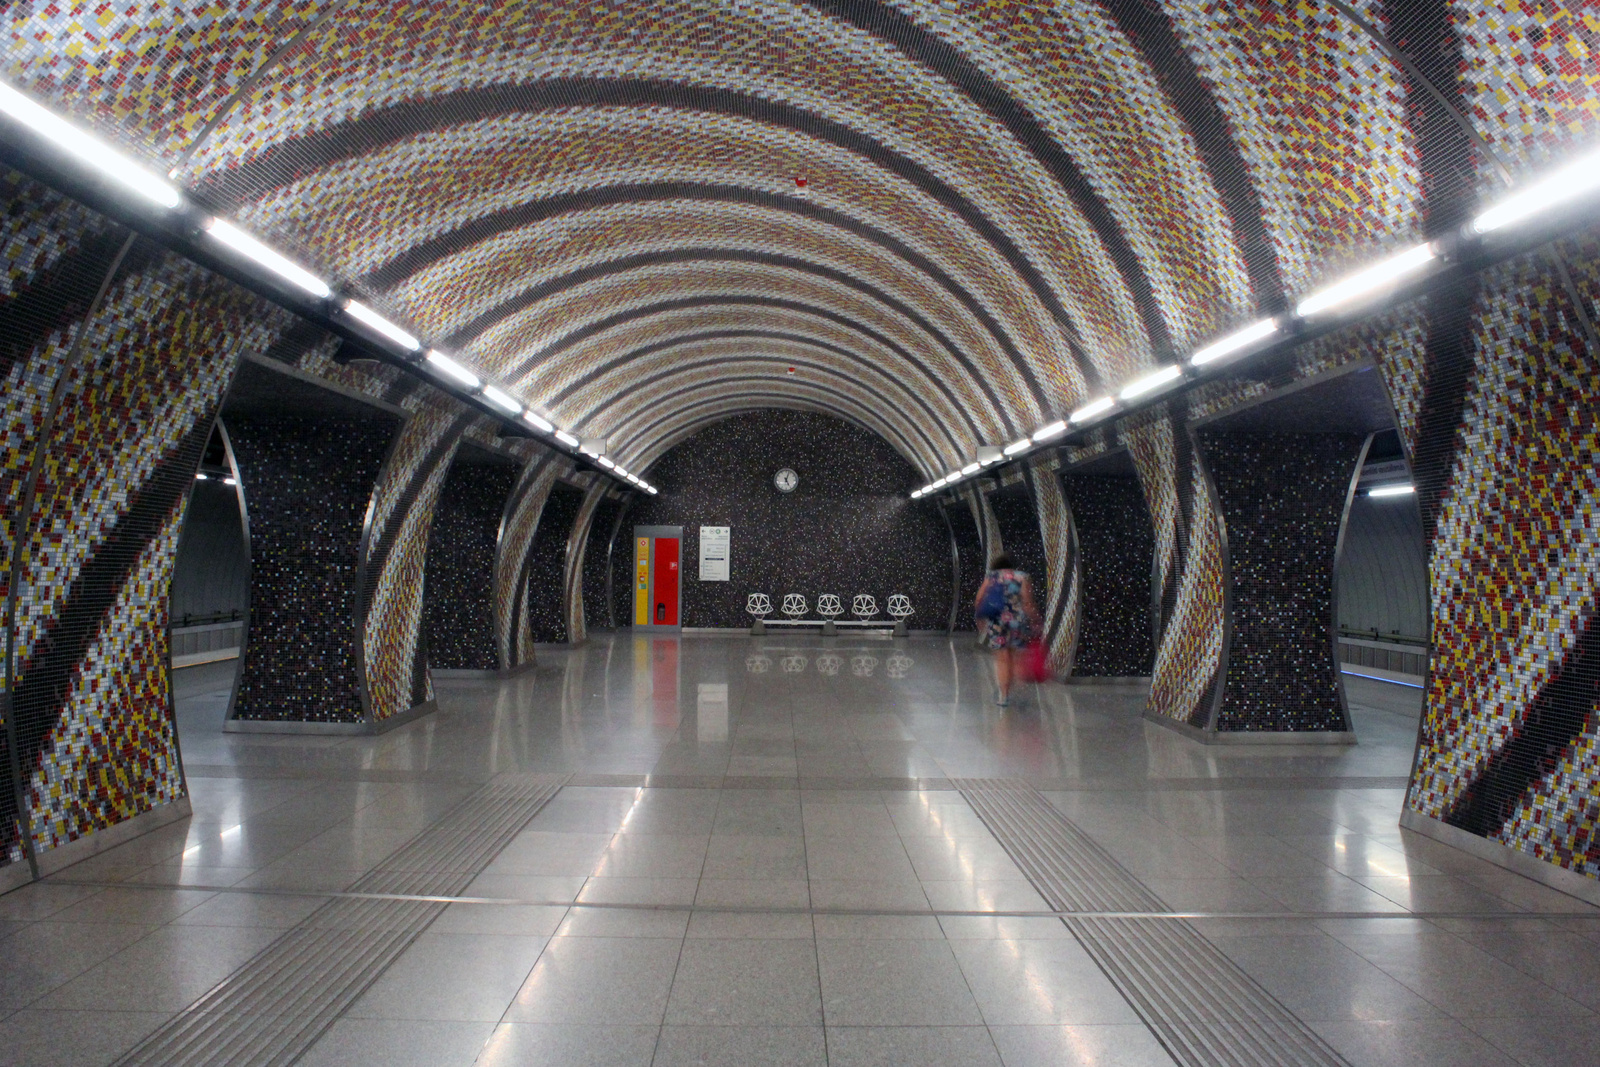 Metro4-GellertTer-20150716-08